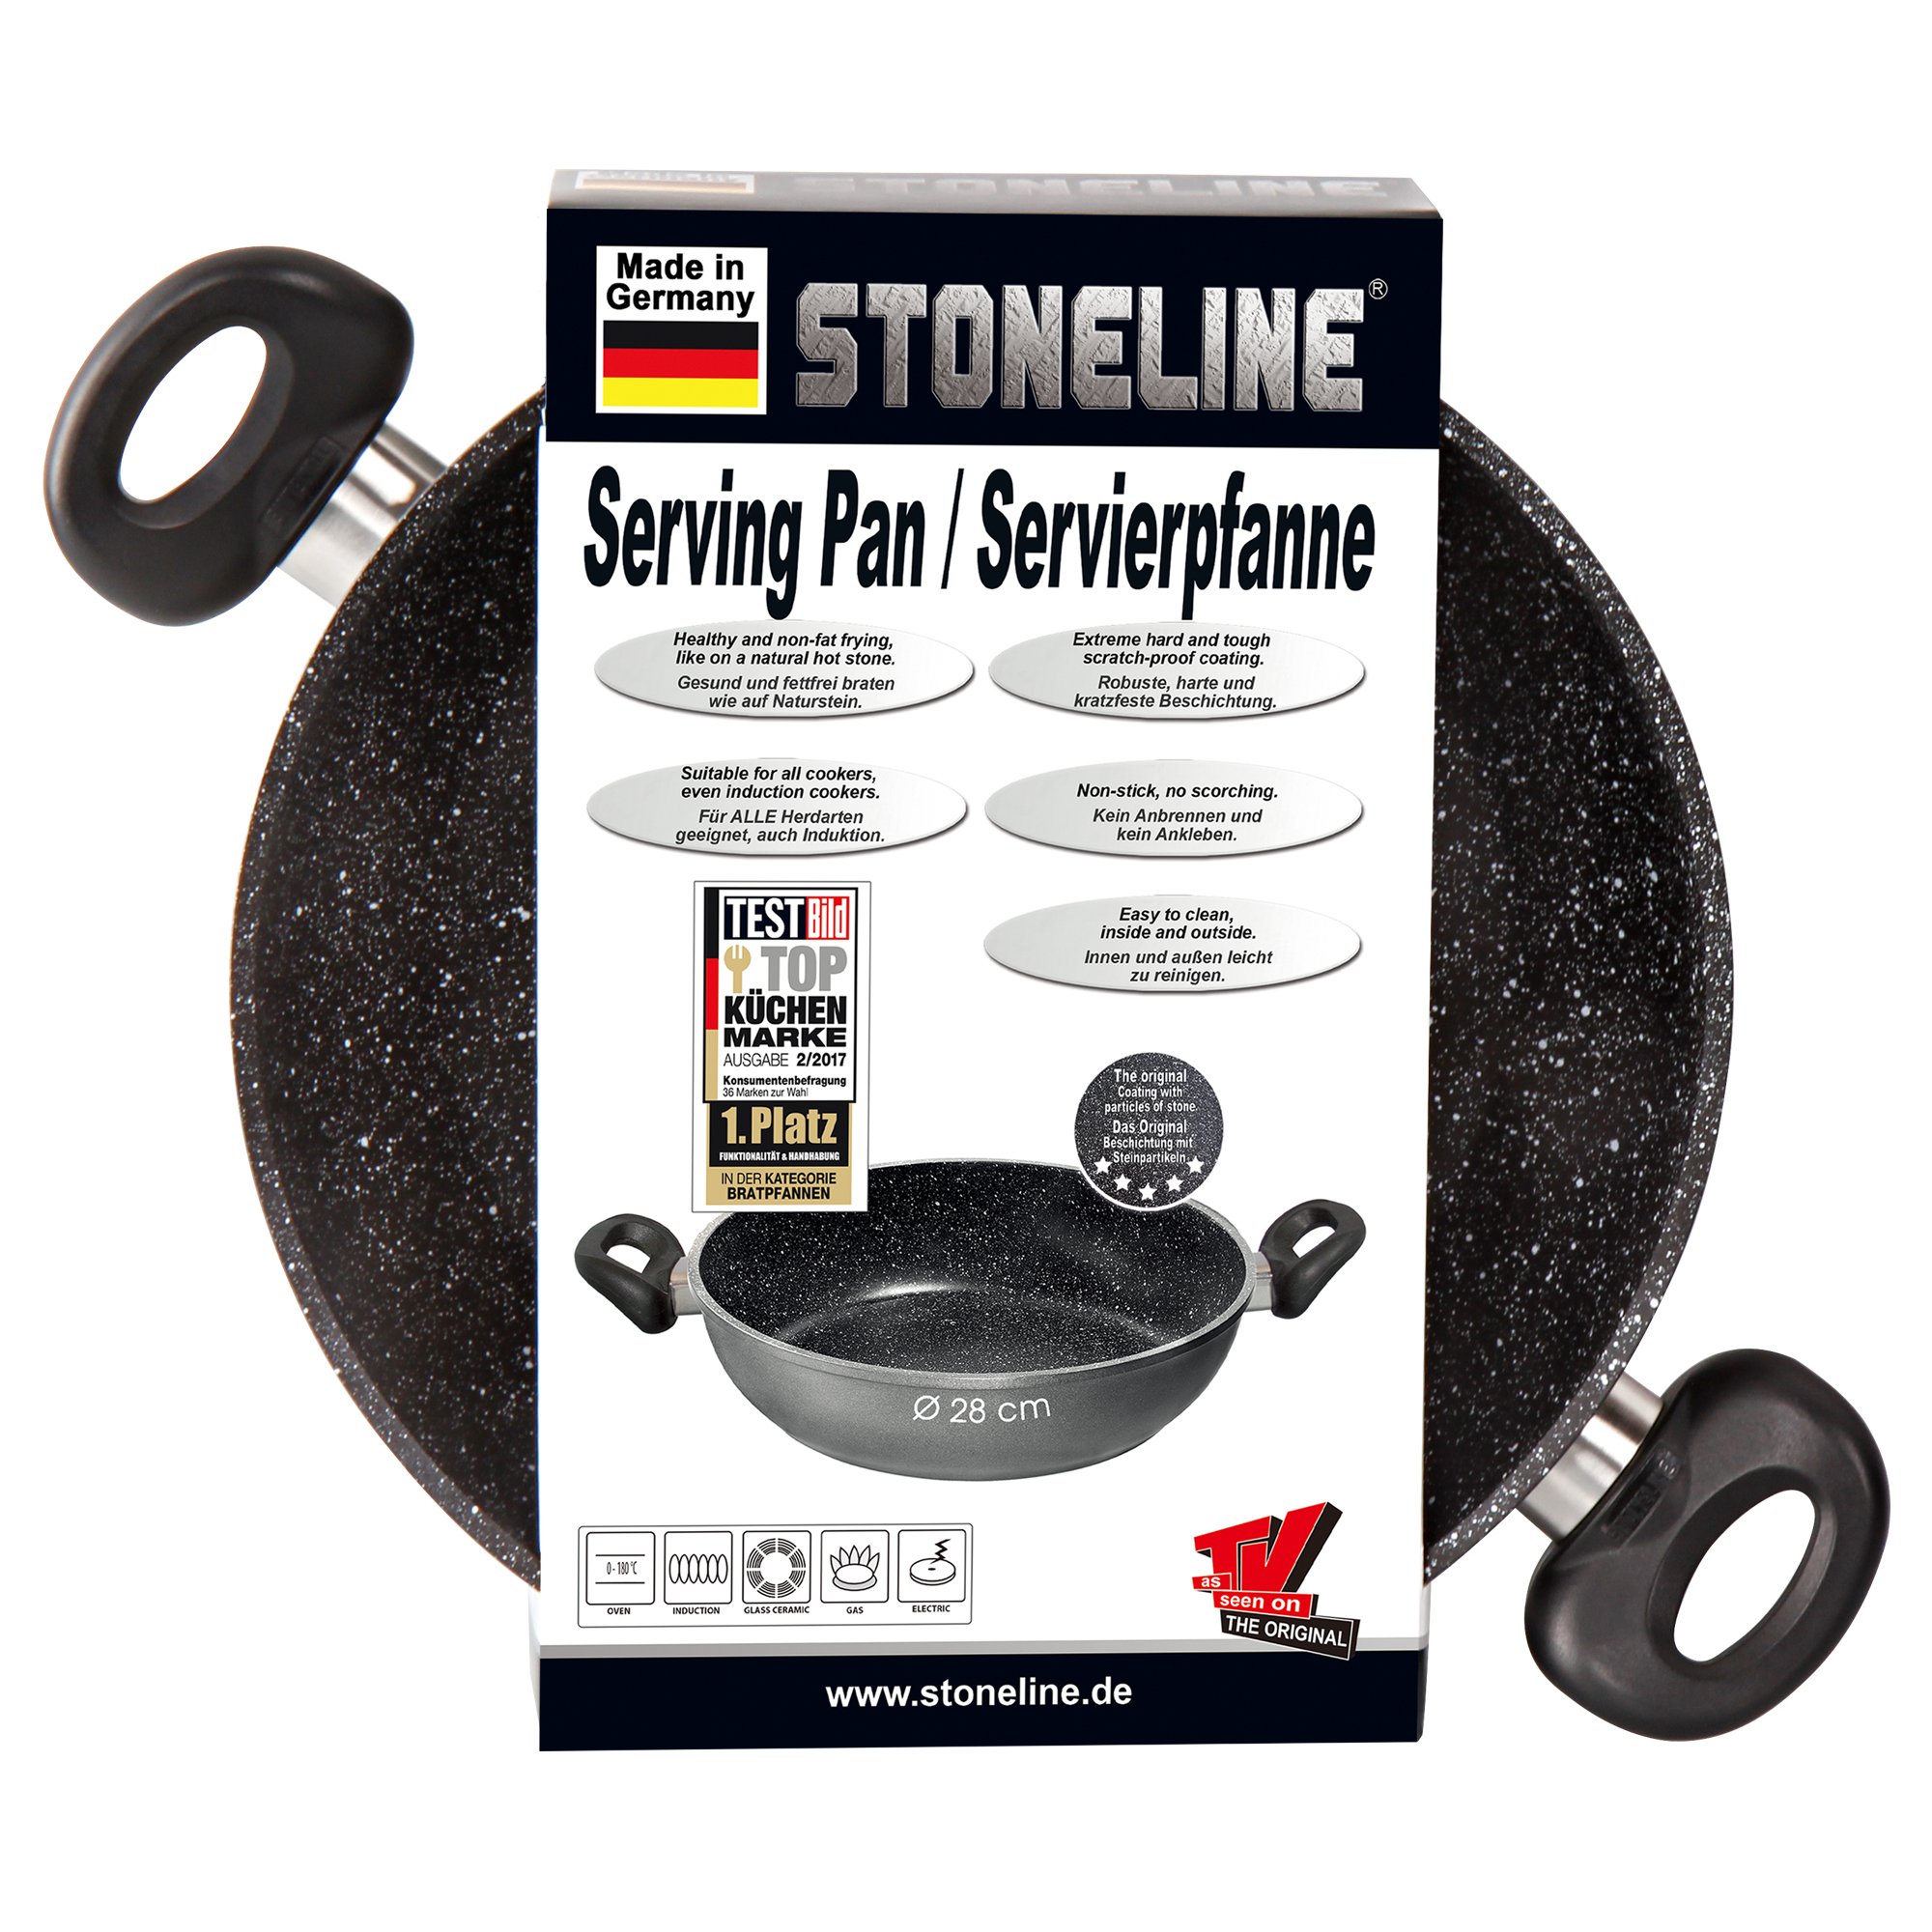 STONELINE® poêle à servir 28 cm, Made in Germany, poêle avec revêtement anti-adhésif, induction et adapté au four